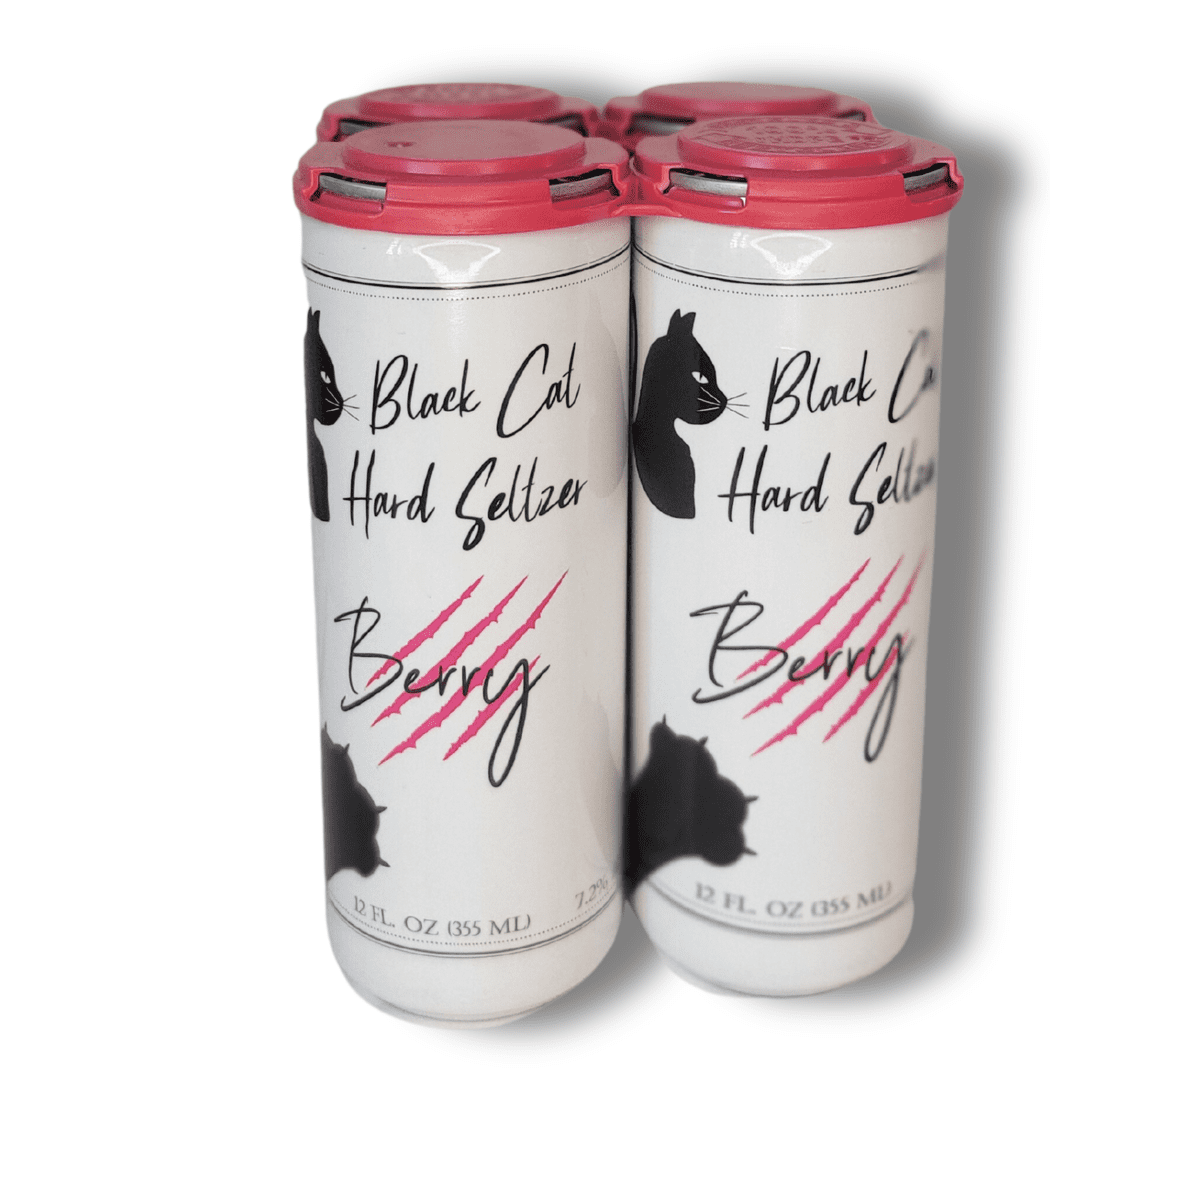 Black Dog - Berry Seltzer - 12oz Sleek Cans - 24-Pack